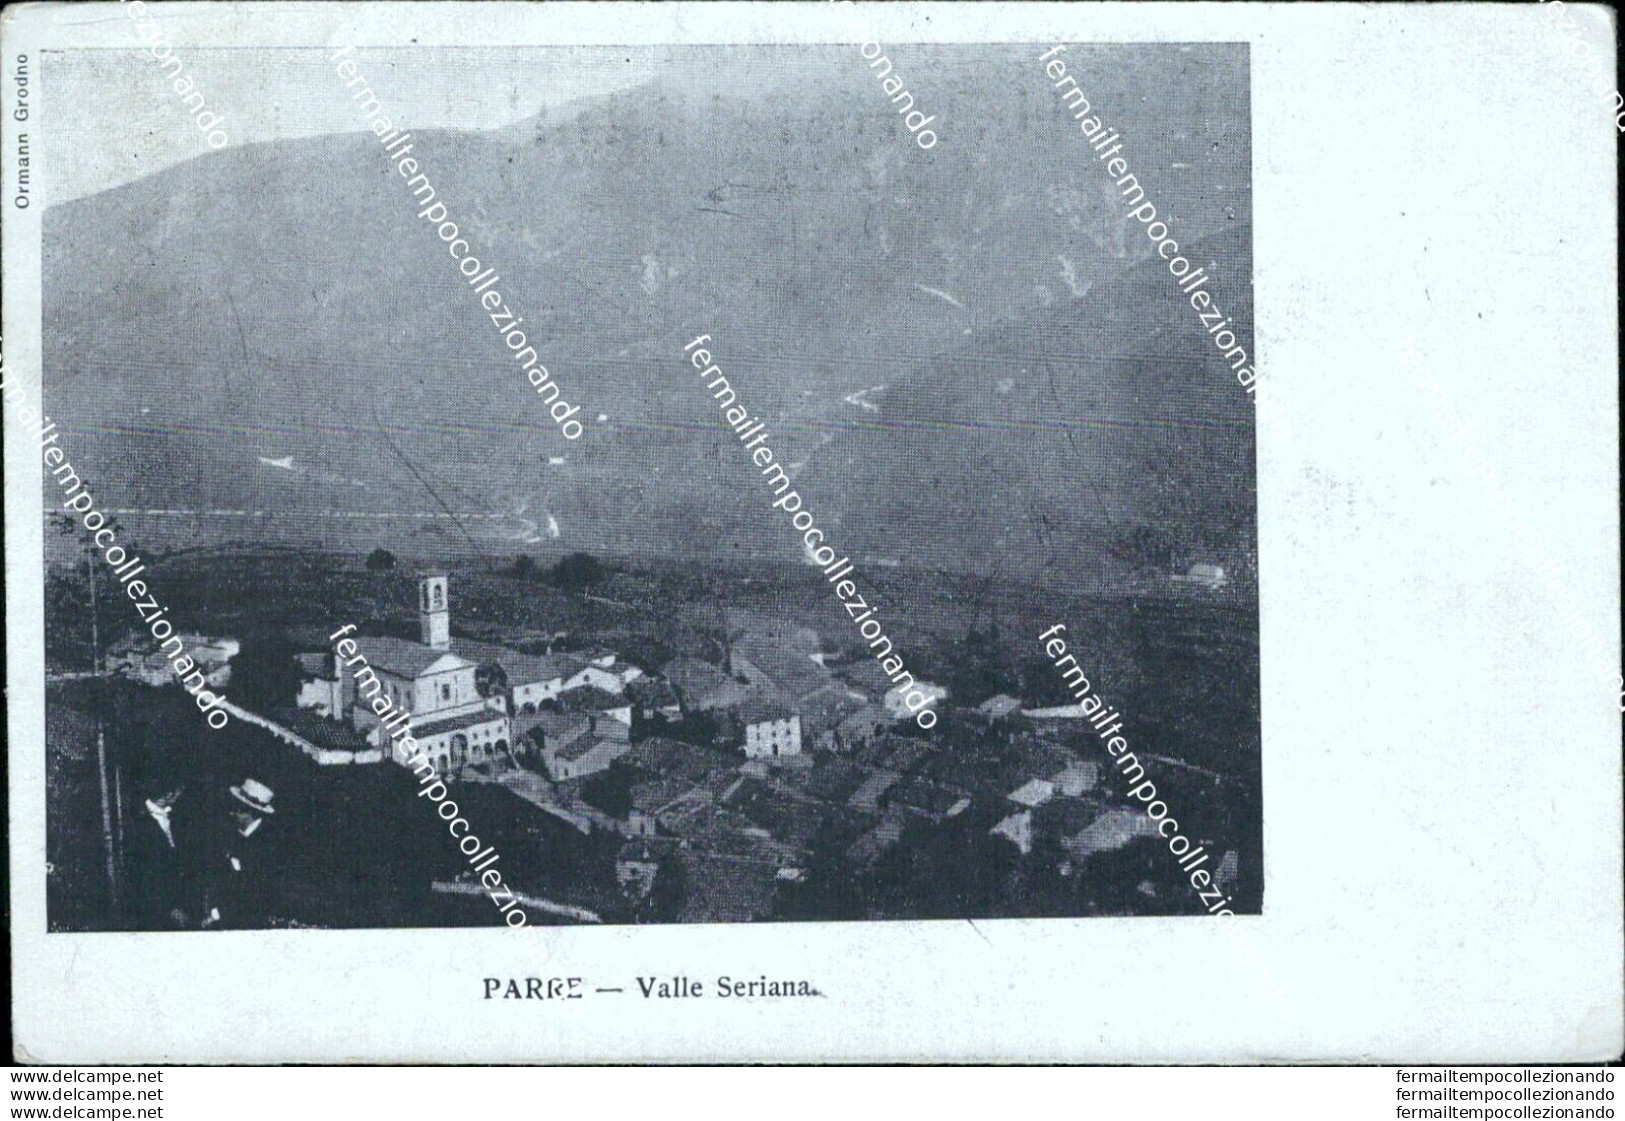 Bs374 Cartolina Parre Valle Seriana 1900 Provincia Di   Bergamo Lombardia - Bergamo